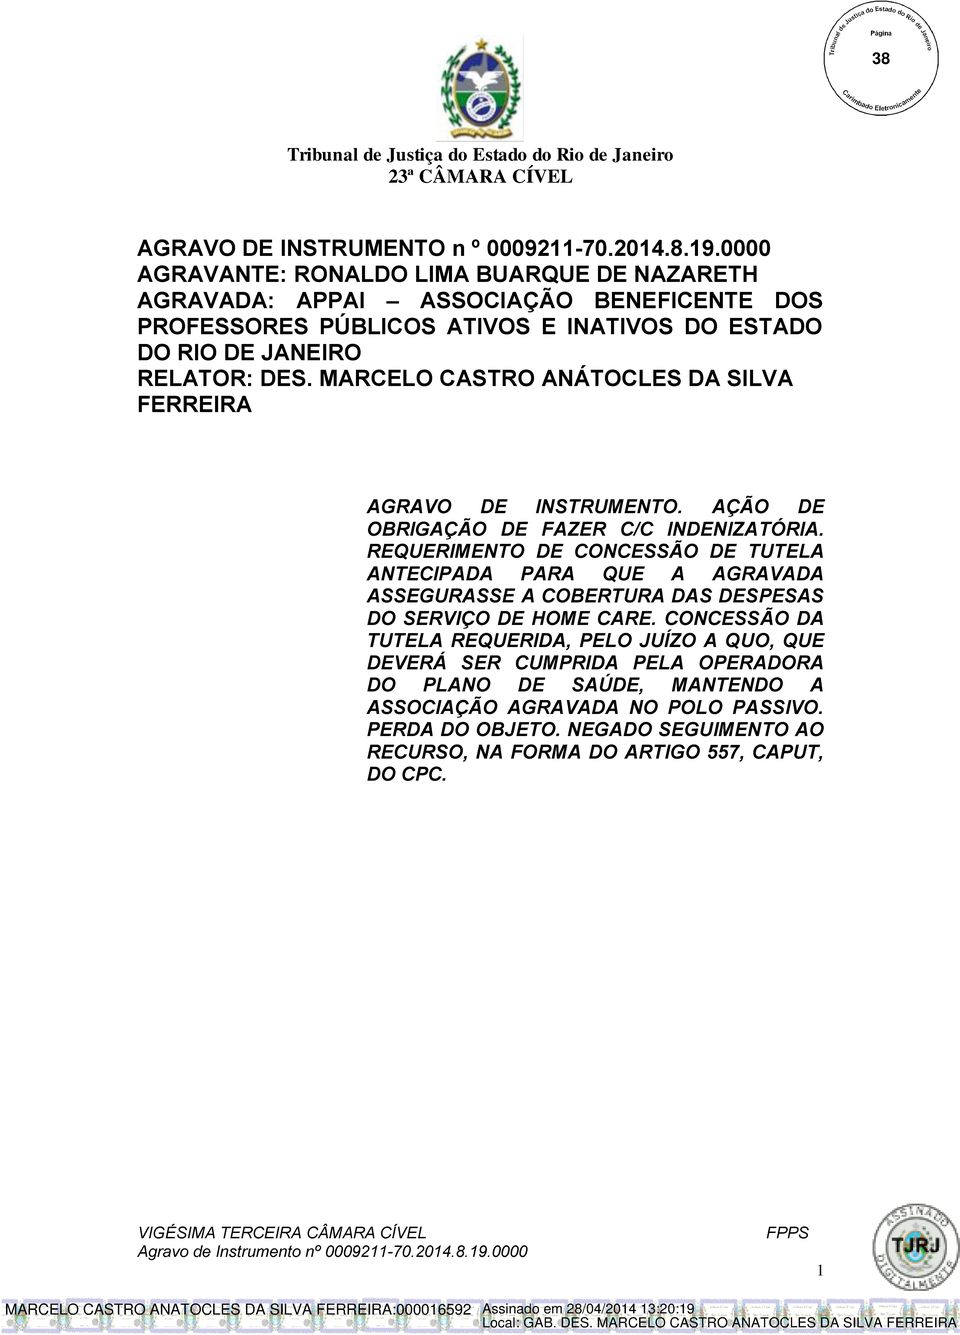 MARCELO CASTRO ANÁTOCLES DA SILVA FERREIRA AGRAVO DE INSTRUMENTO. AÇÃO DE OBRIGAÇÃO DE FAZER C/C INDENIZATÓRIA.